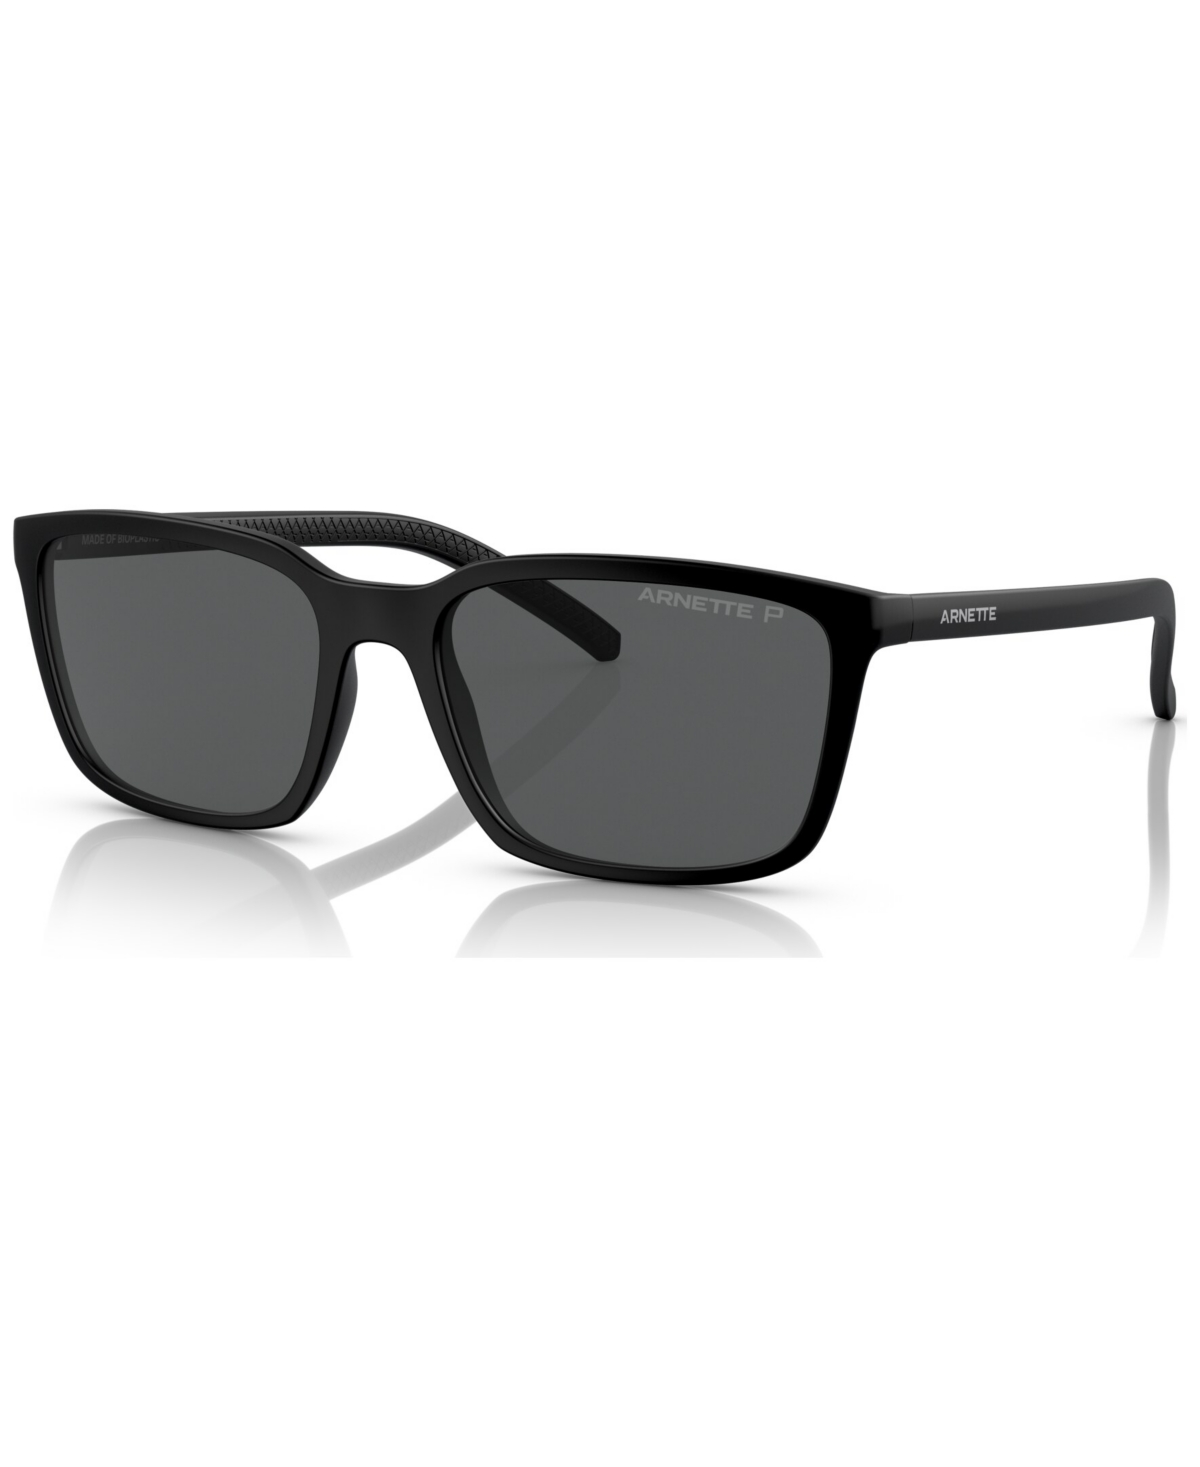 Arnette Men's Polarized Sunglasses, AN431156-p